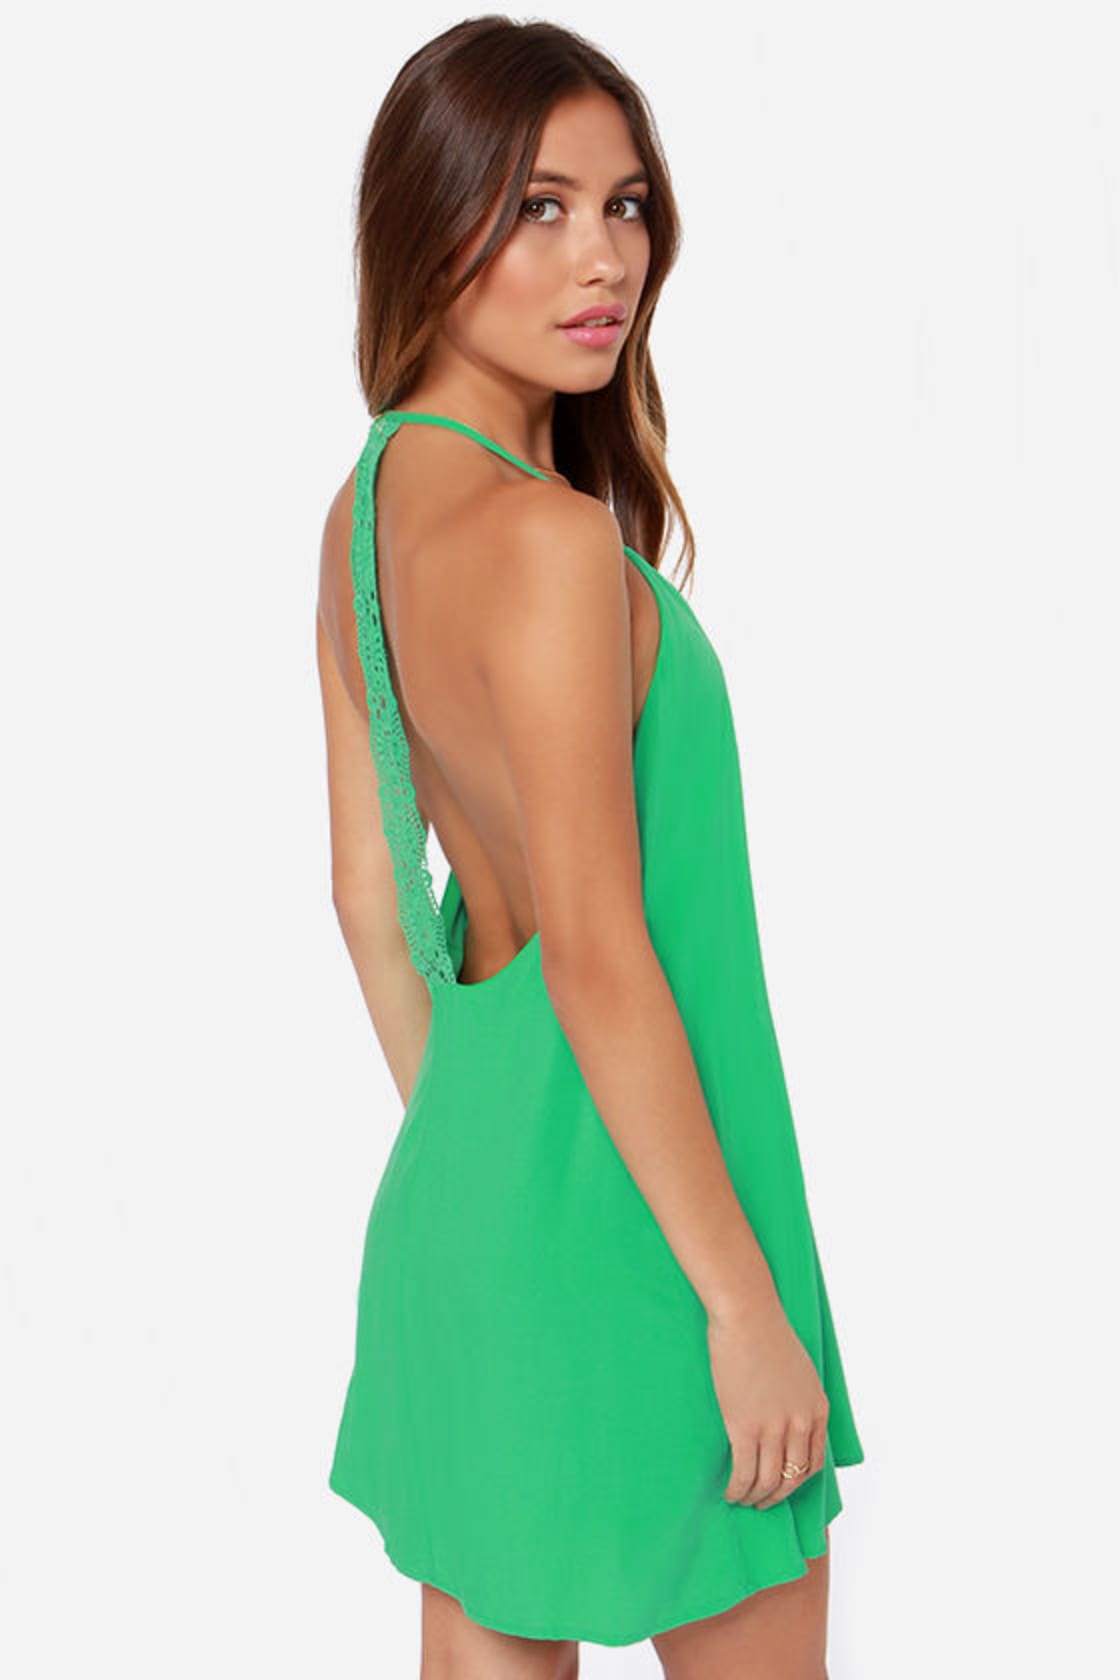 Cute Green Dress - Crochet Dress - Backless Dress - $37.00 - Lulus